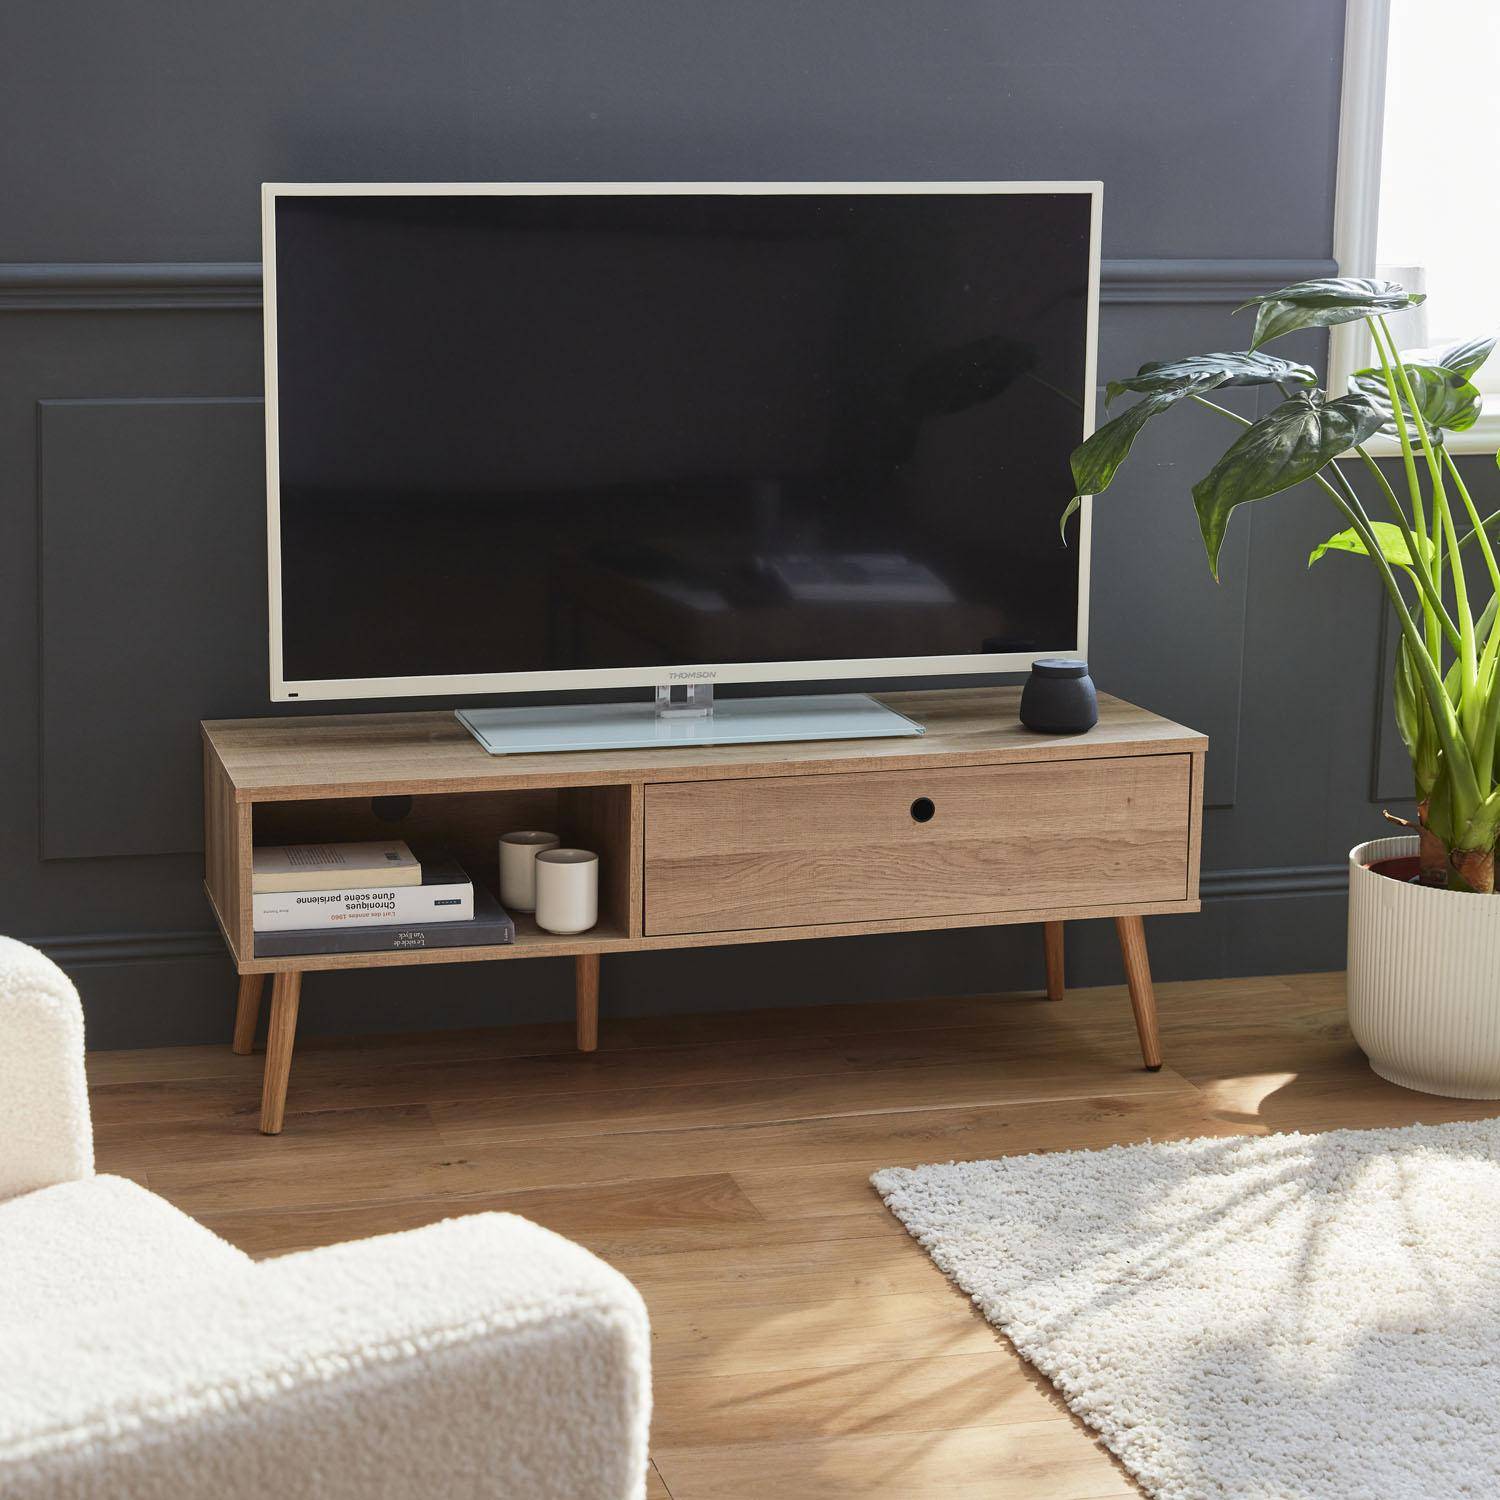 Mueble de TV en decoración de madera 120x39x43cm - Scandi - 1 cajón, 1 espacio de almacenamiento  Photo1